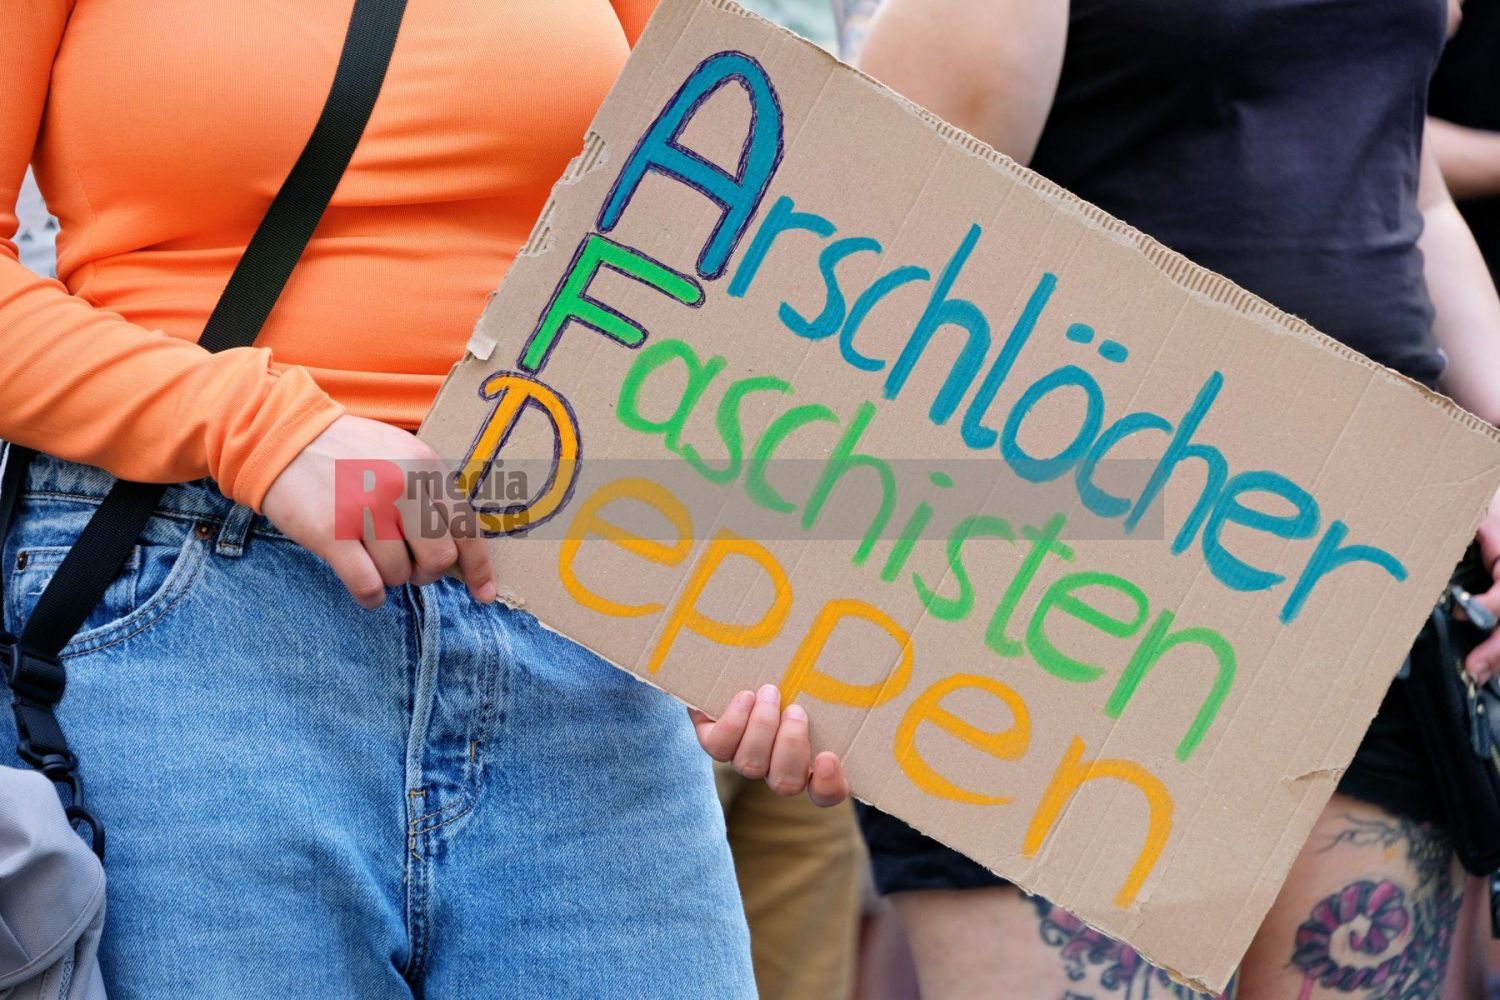 Protest gegen den AfD Parteitag in Essen <i>Bild Bitzel/R-mediabase</i> <br><a href=/confor2/?bld=82753&pst=82745&aid=70&dc=0922&i1=Bitzel/R-mediabase><strong>Downloadanfrage</strong></a>  